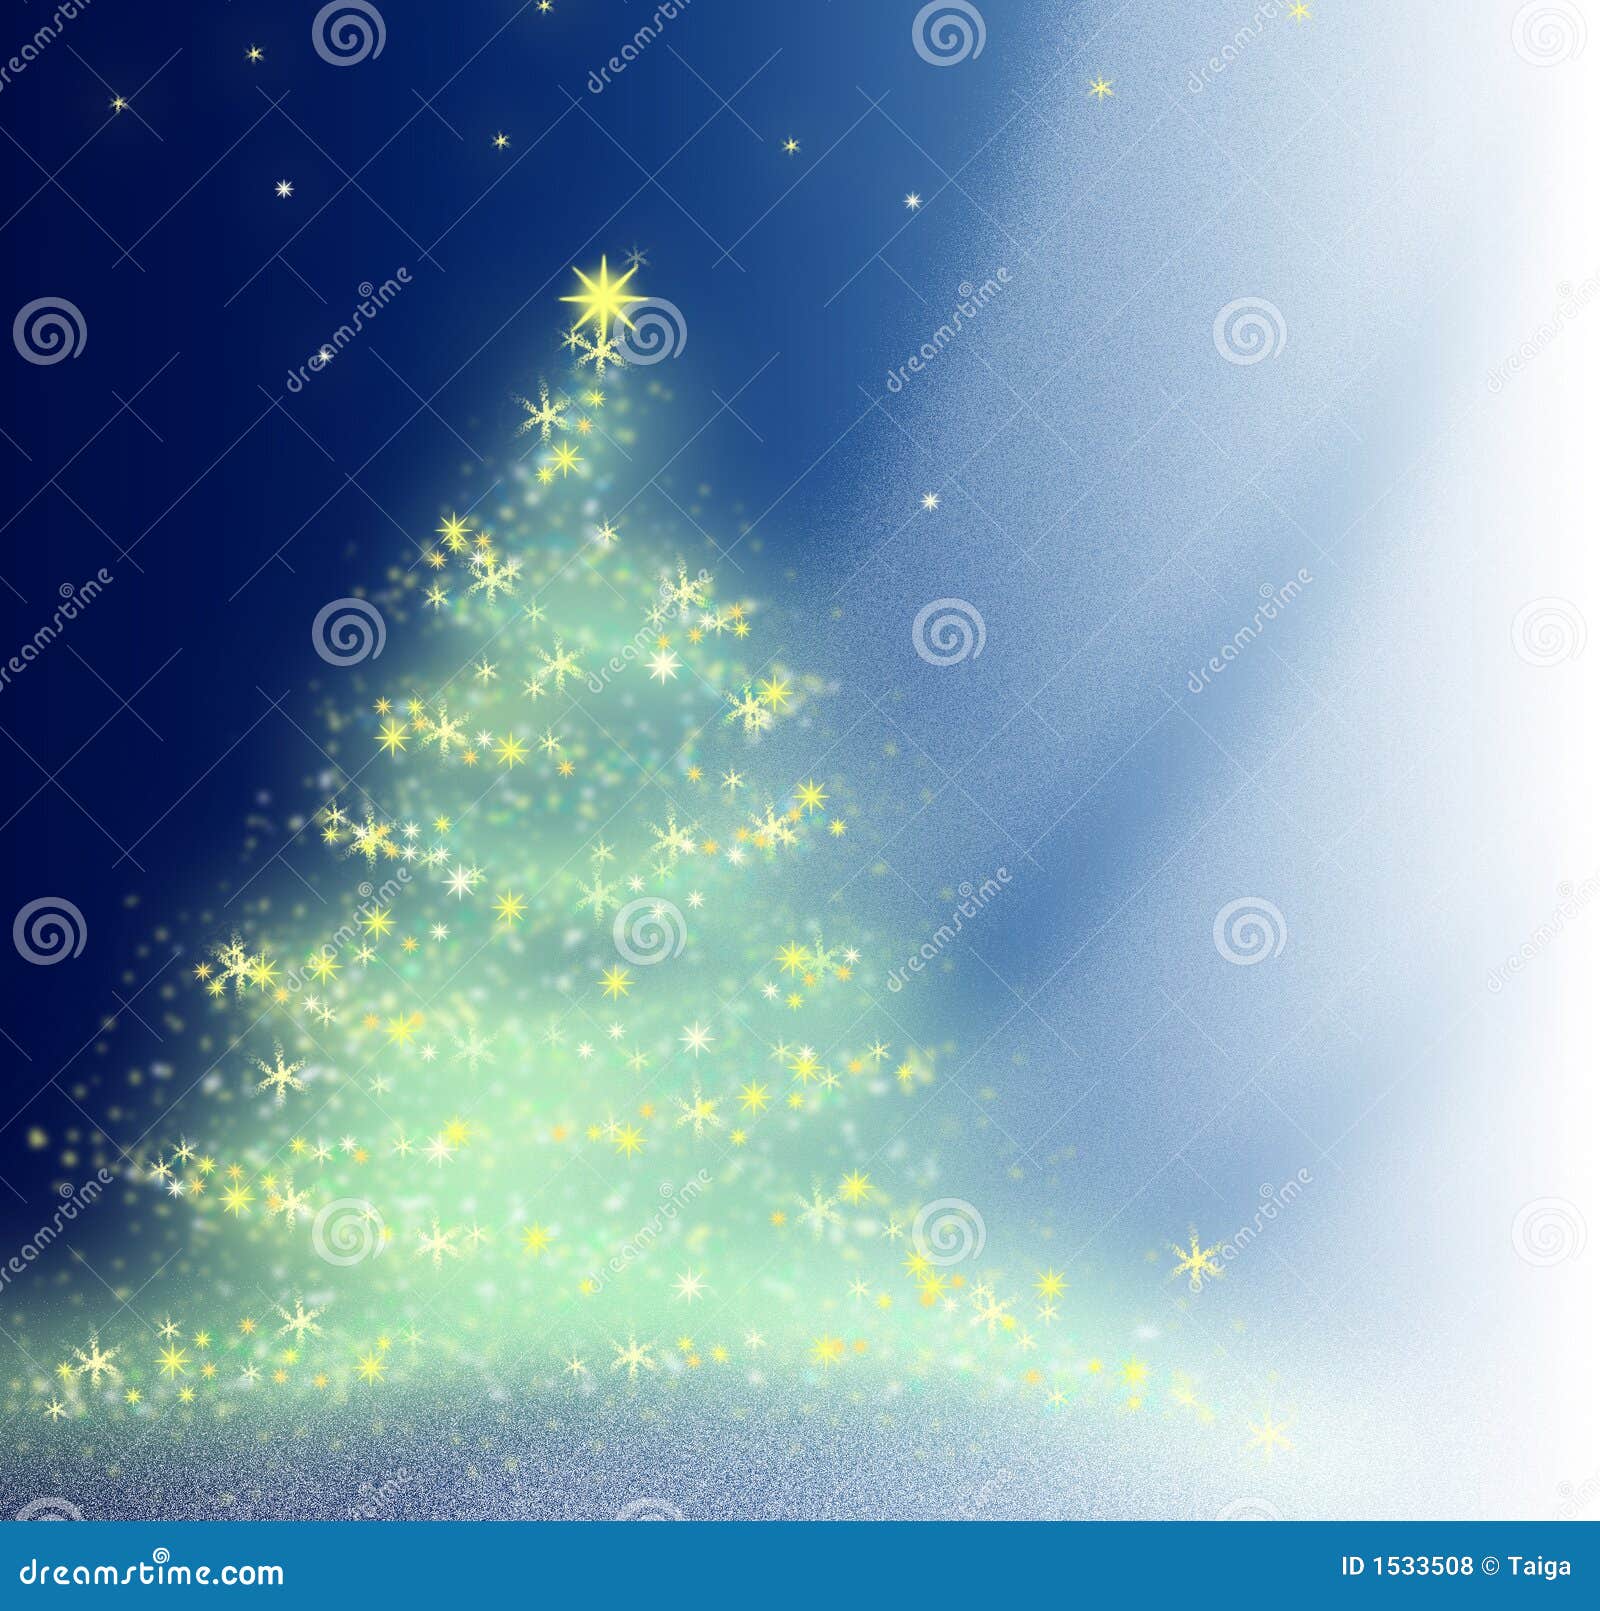 Bella priorità bassa. L'illustrazione è fatta nel photoshop. L'albero di Natale scintilla ad una celebrazione.